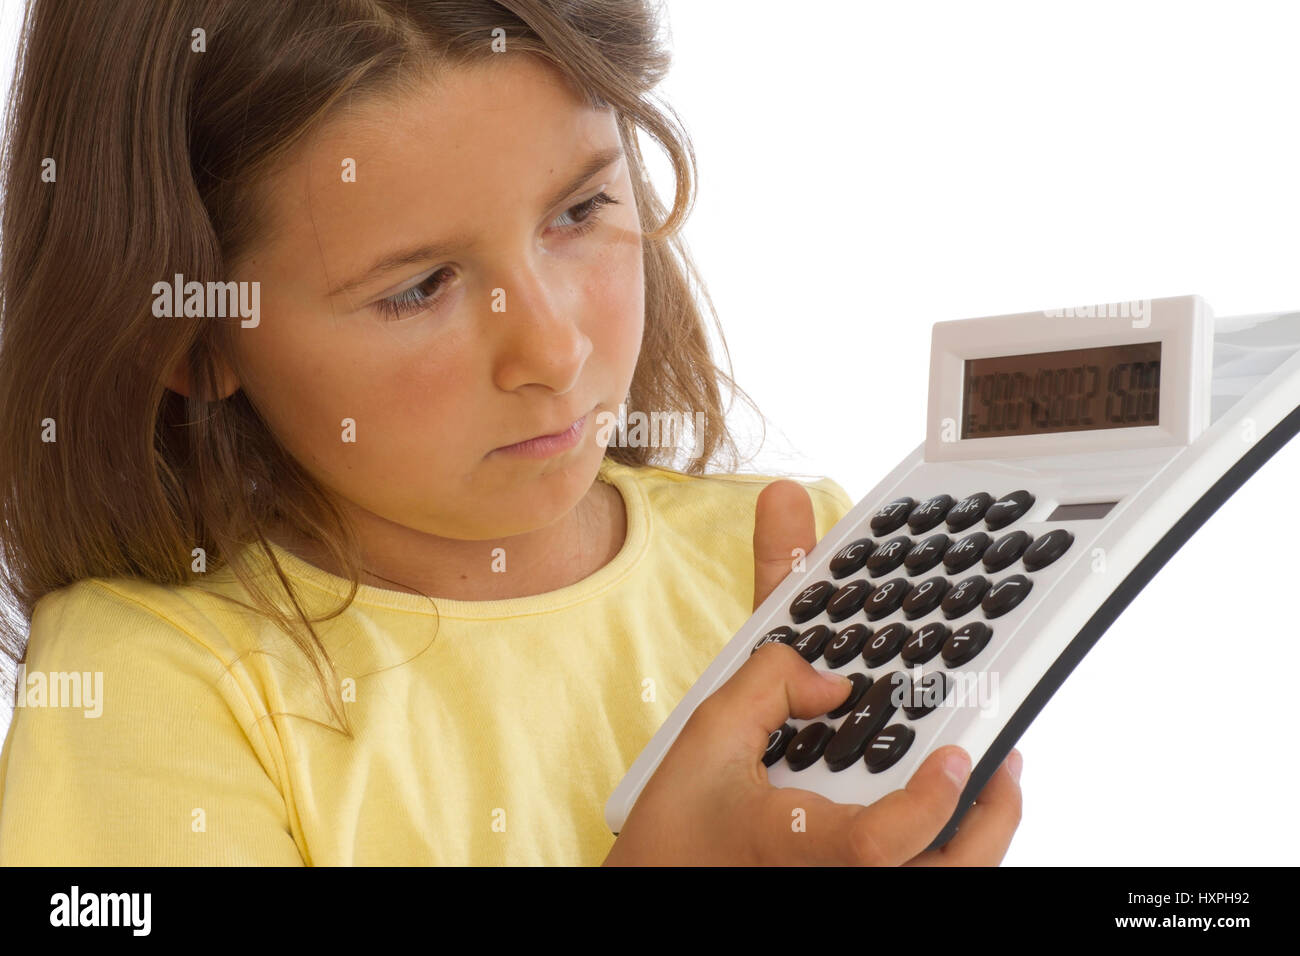 Calculatrice de poche avec les filles , Mädchen mit Taschenrechner Banque D'Images